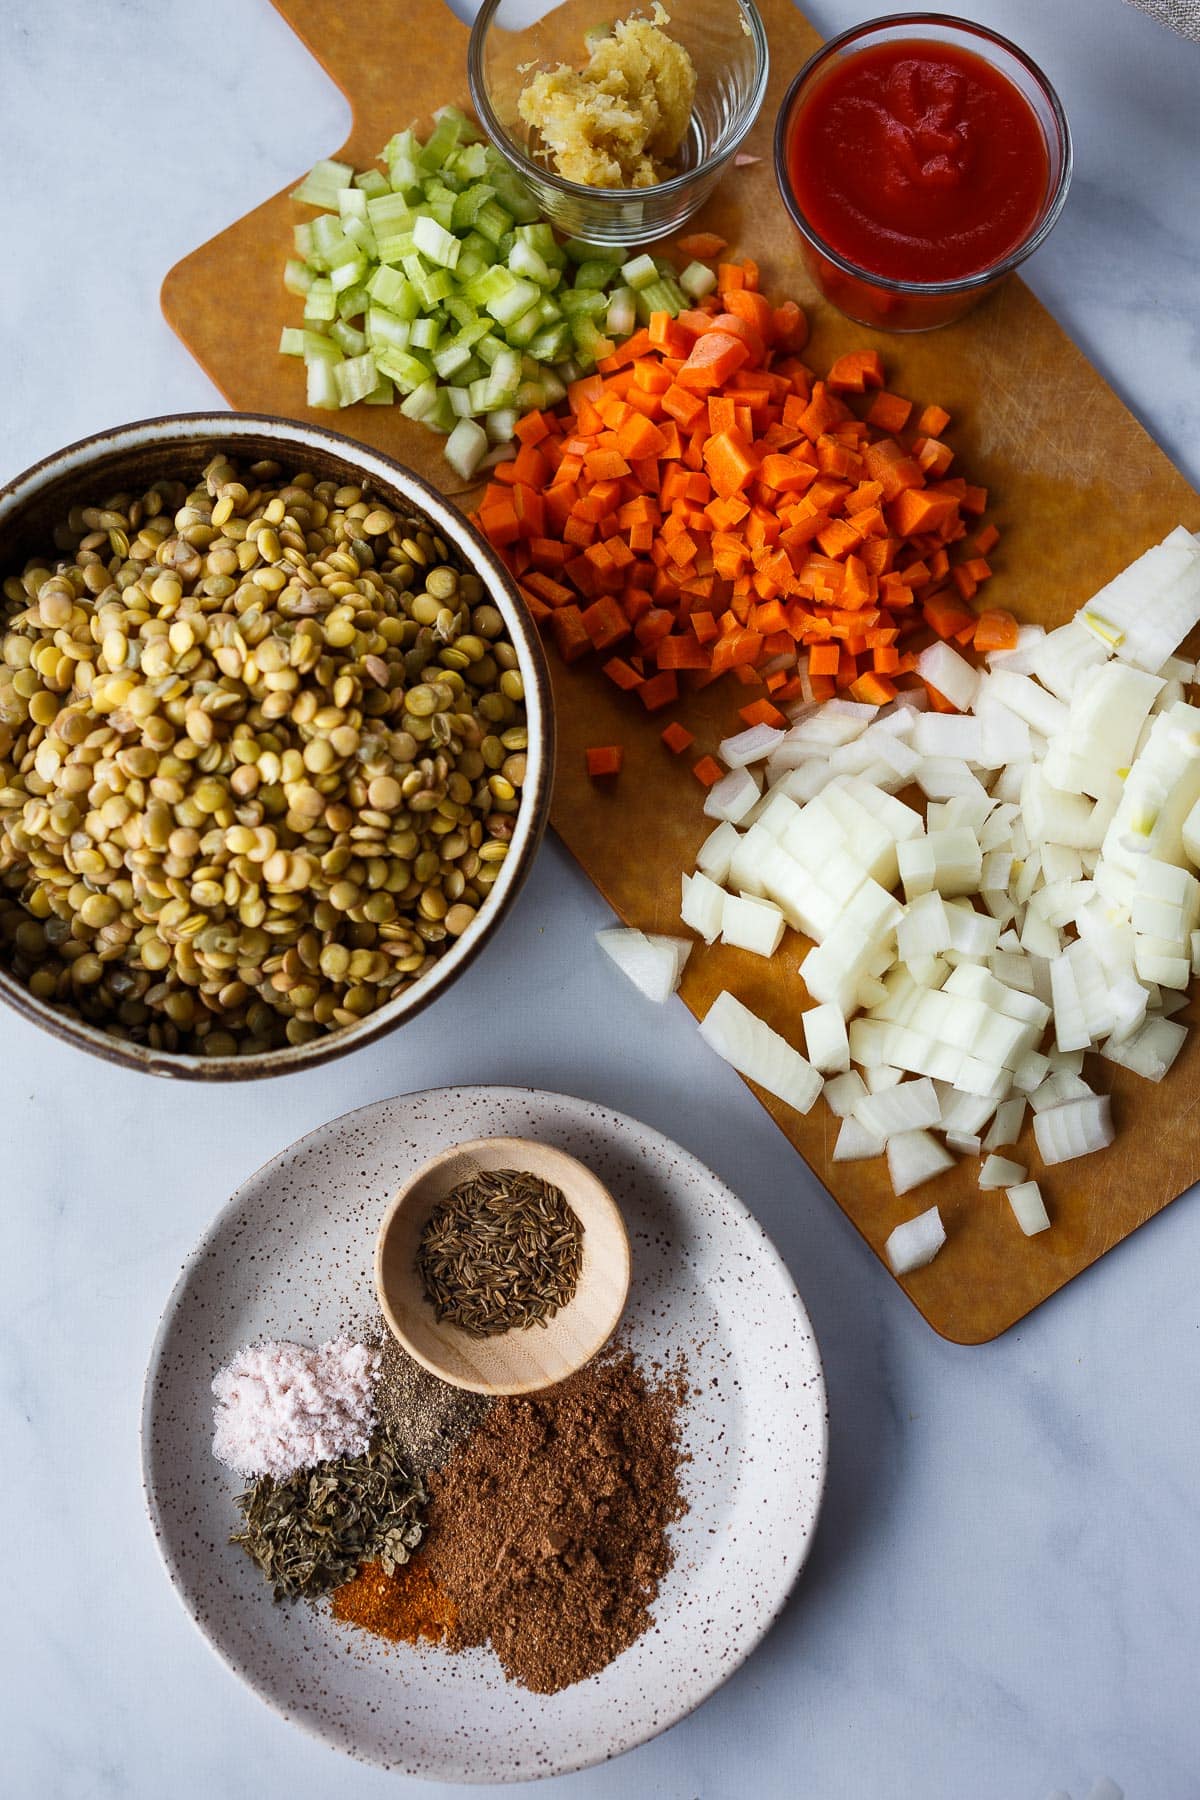 Ingredients for lentil soup with garam masala.